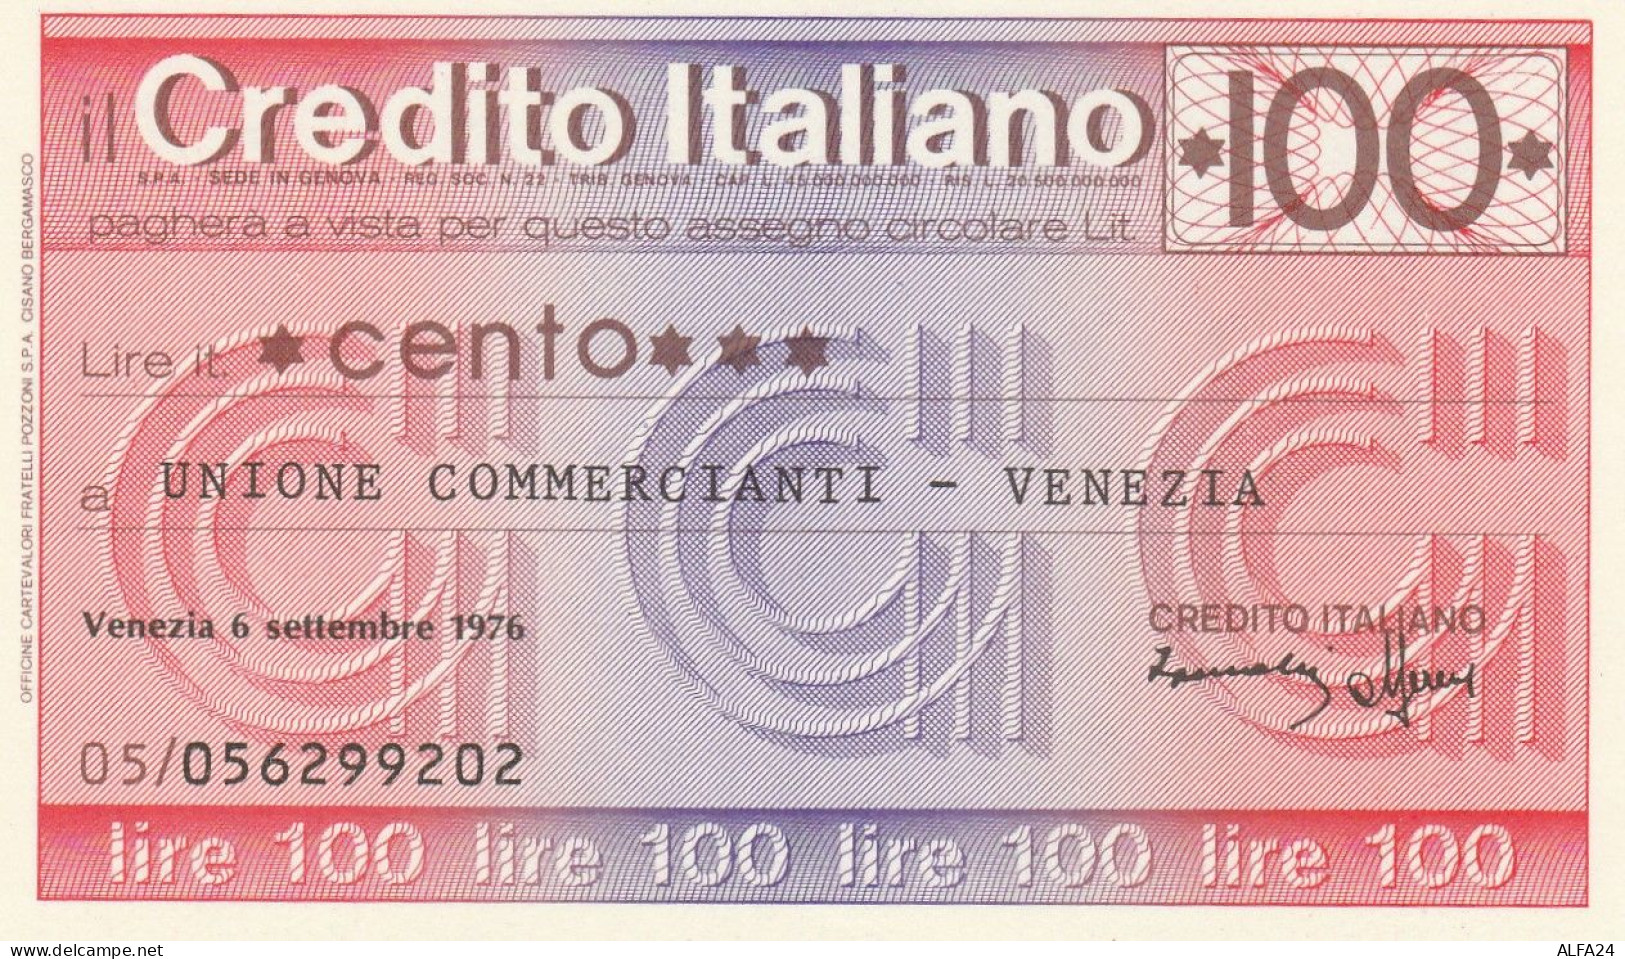 MINIASSEGNO CREDITO ITALIANO 100 L. UN COMM VE (A292---FDS - [10] Chèques